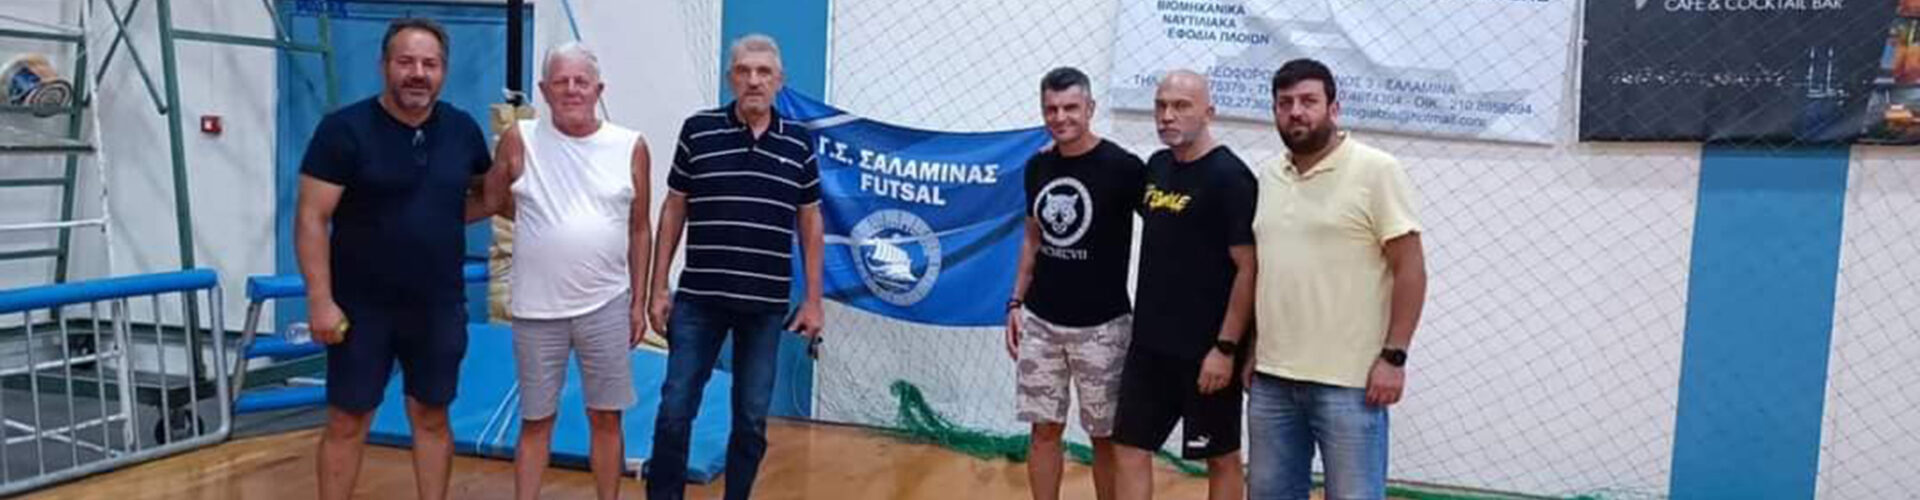 Γυμναστικός Σύλλογος Σαλαμίνας Futsal Club